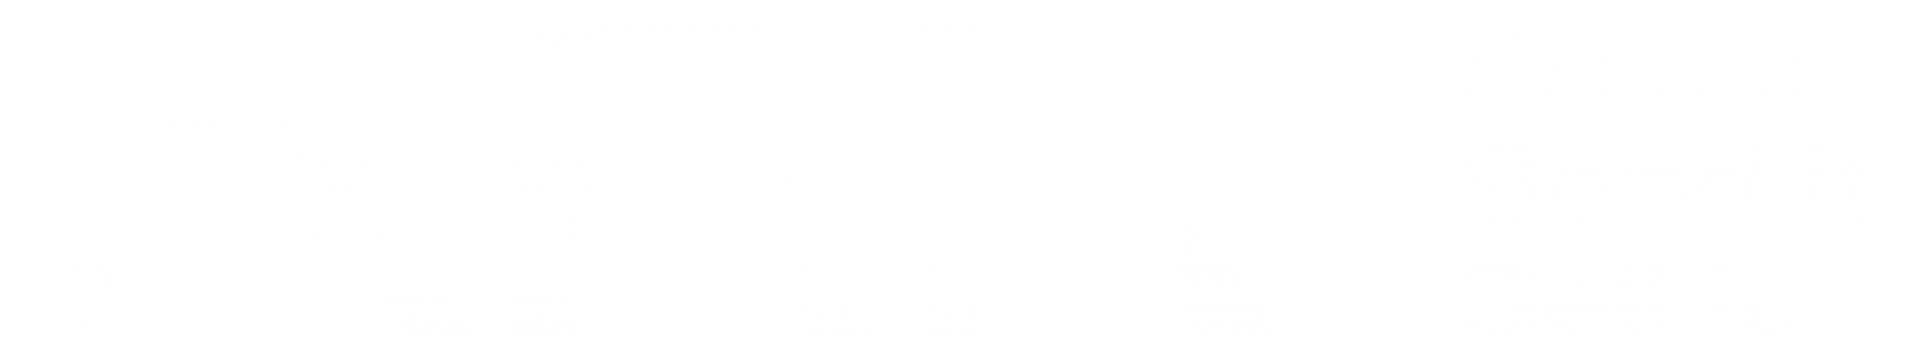 The ARK Video logo.